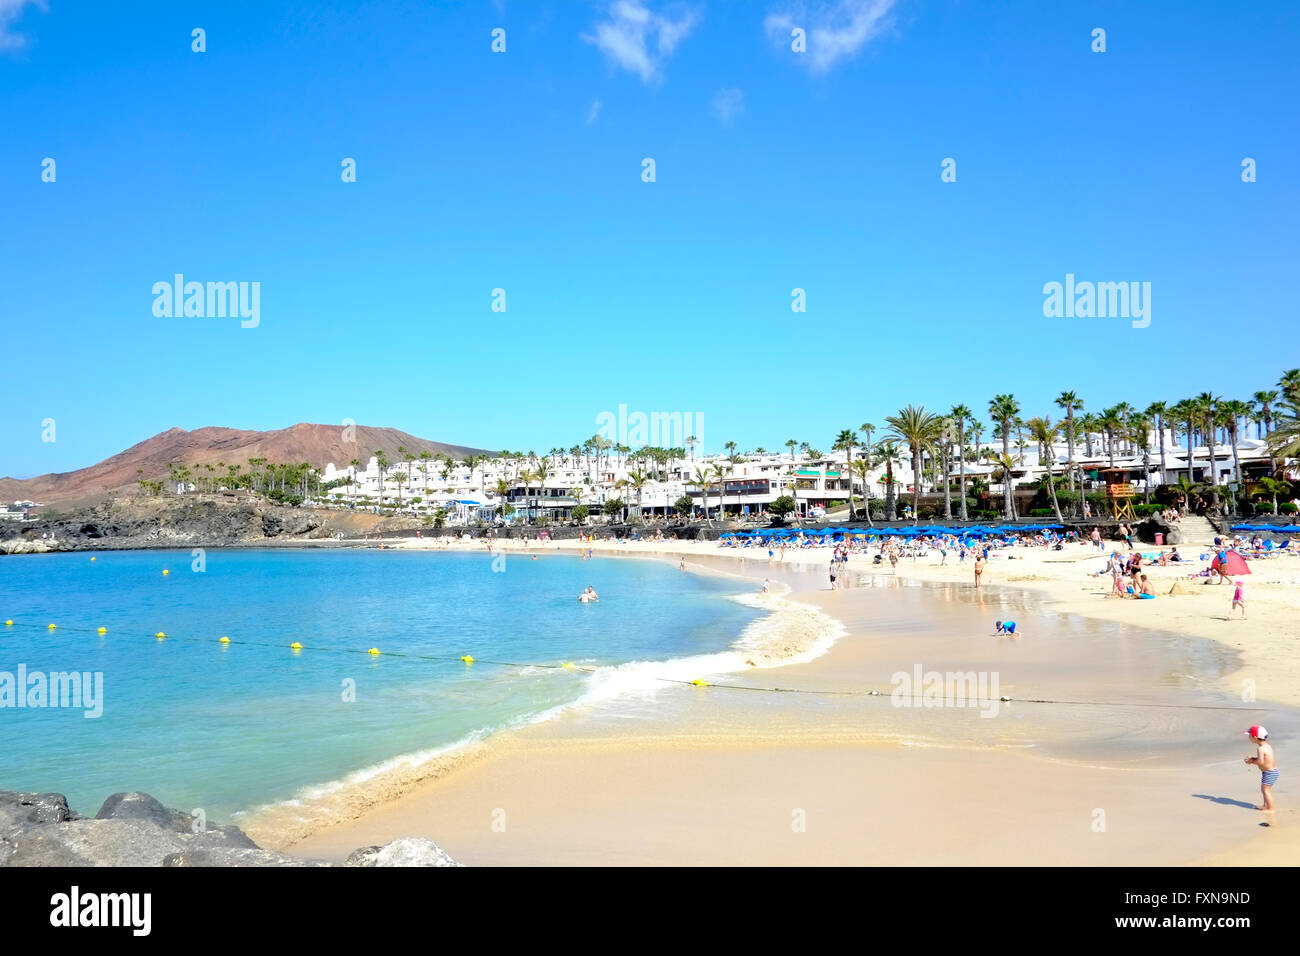 Ein Blick auf den Strand auf der Westseite von Playa Blanca, Lanzarote. Es ist ein warmer Frühlingstag mit Urlauber genießen die Sonne auf einem goldenen Strand Stockfoto